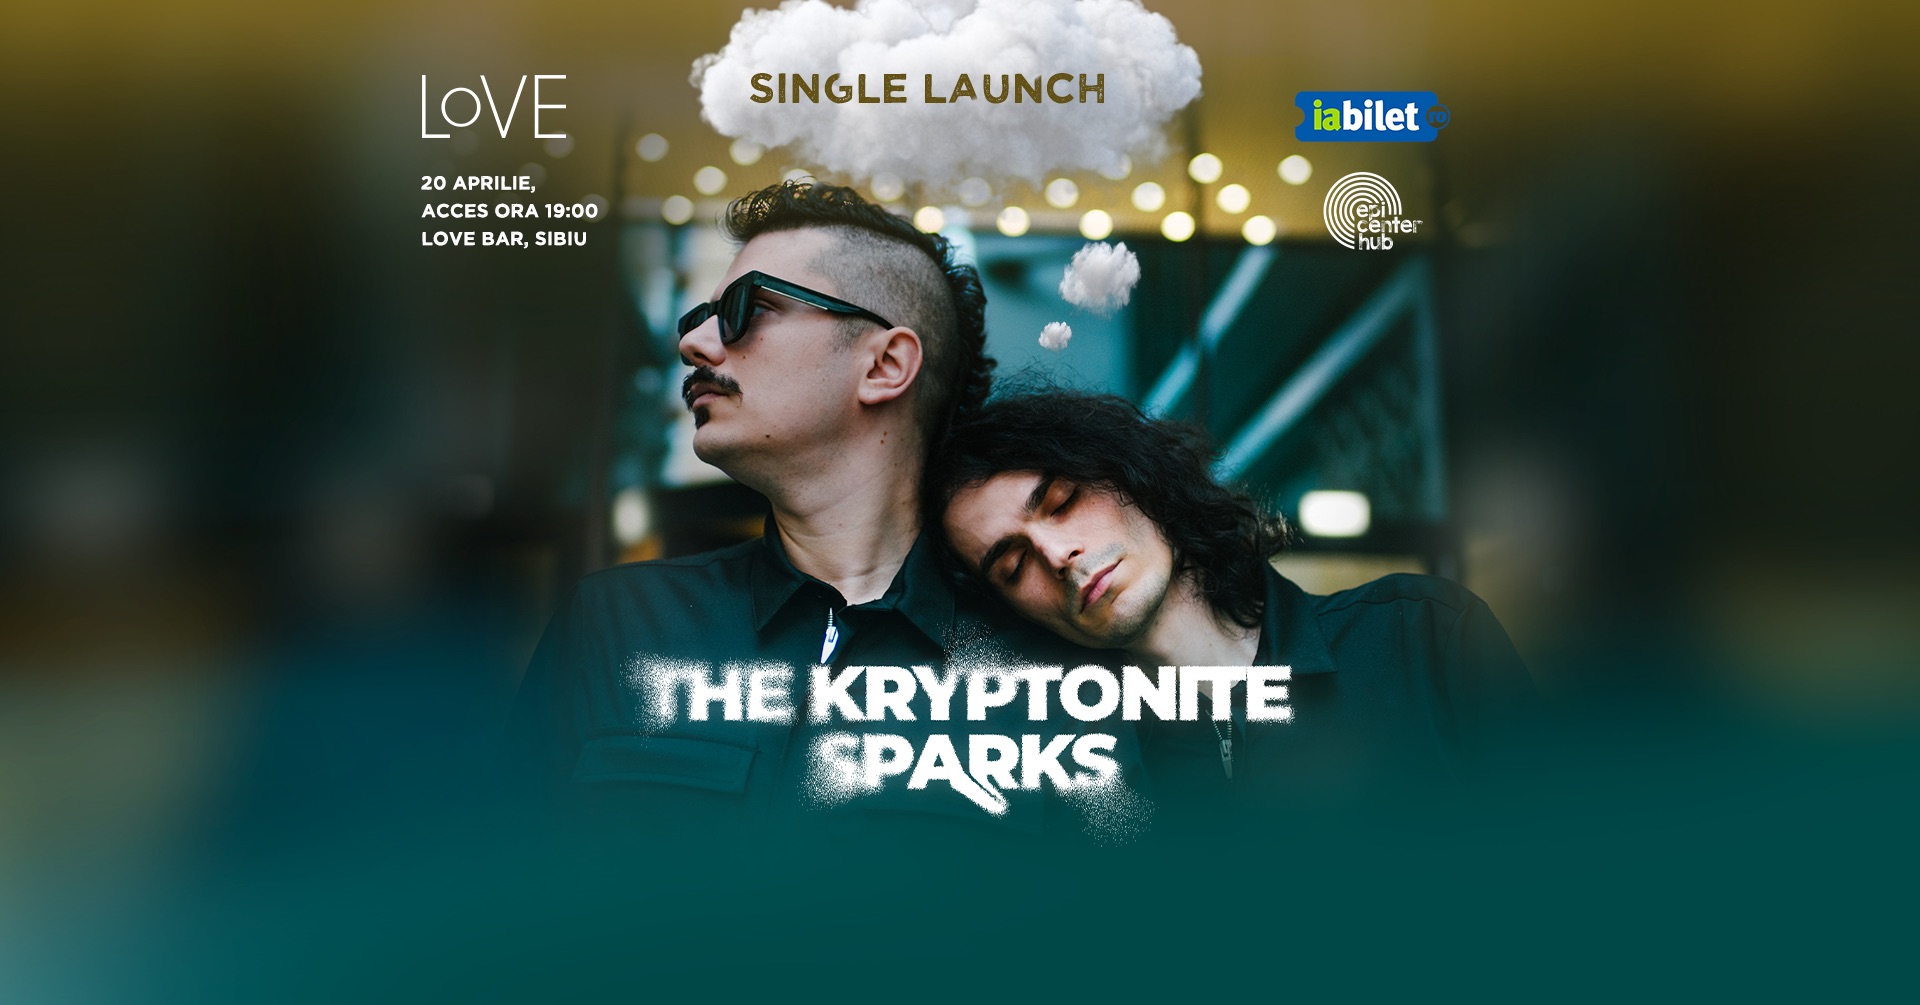 SIBIU • The Kryptonite Sparks • Lansare Single • 20.04